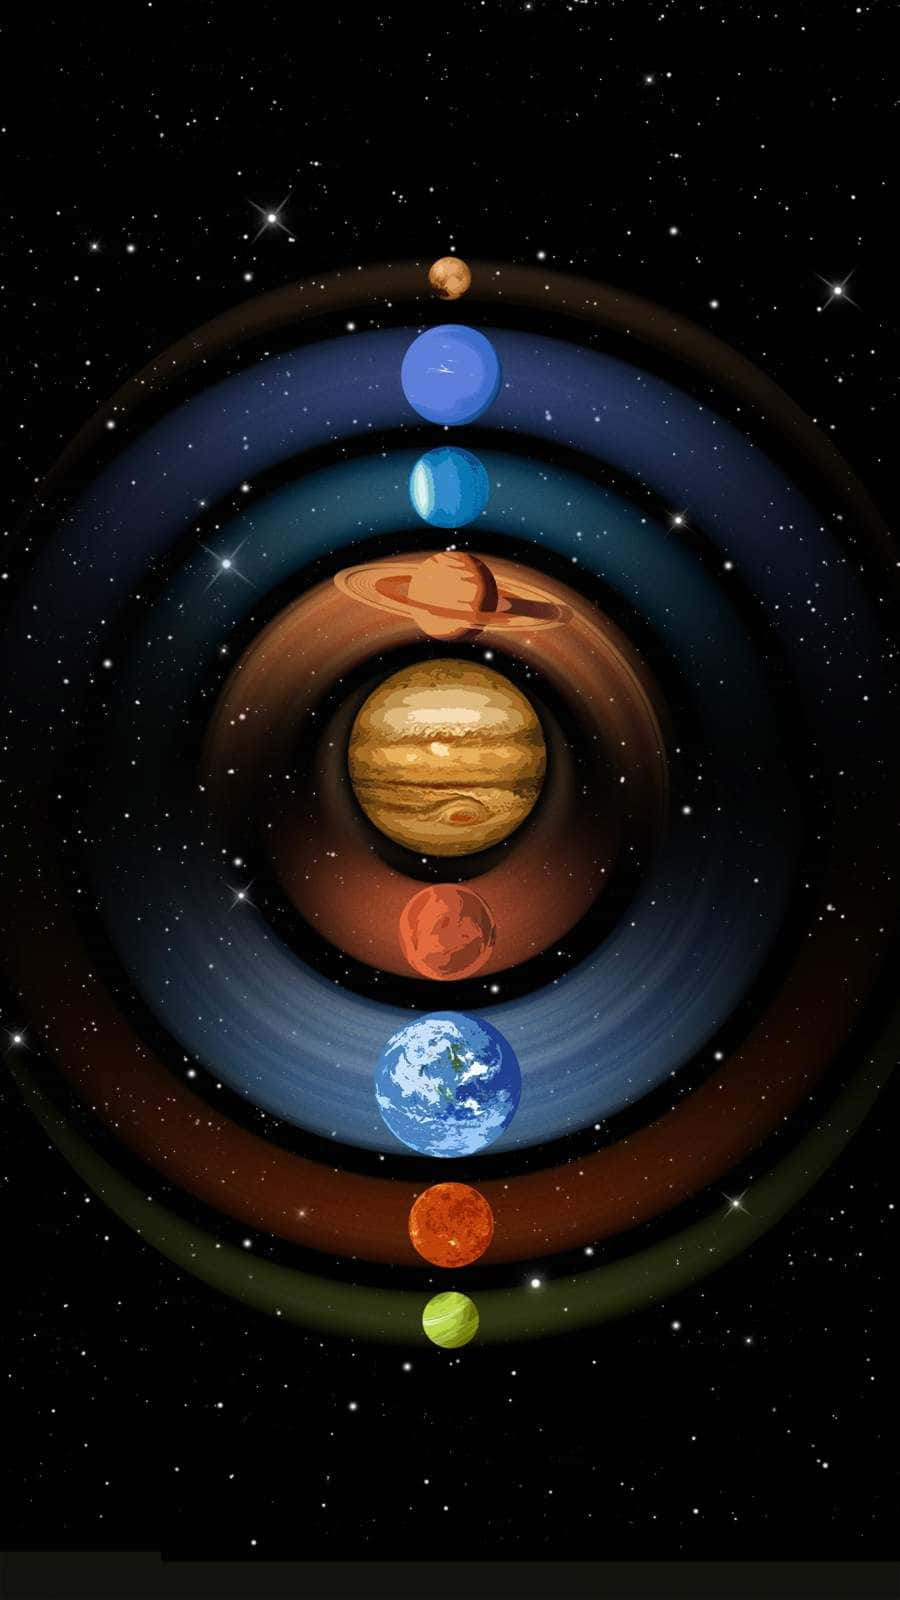 Planetasdel Sistema Solar En Órbita Fondo de pantalla